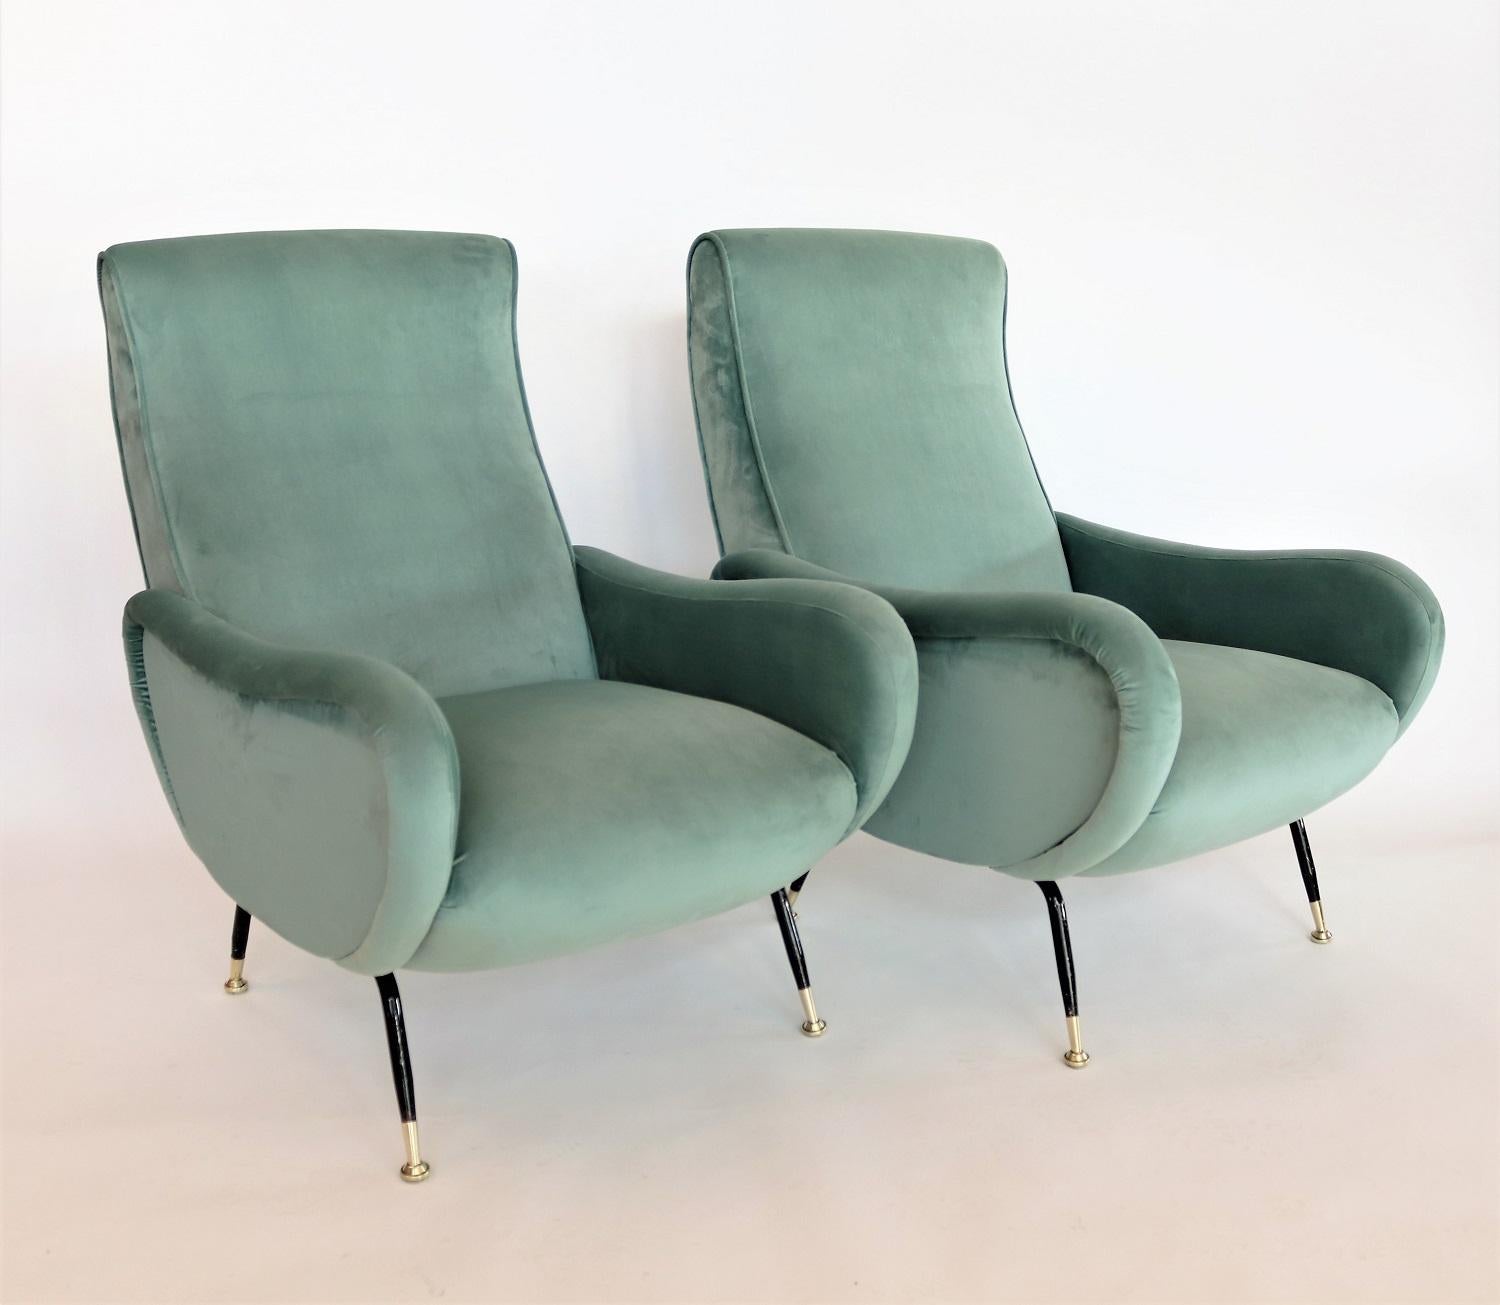 Mid-Century Modern Italian Midcentury Armchairs in Mint Green Velvet and Brass, 1950s